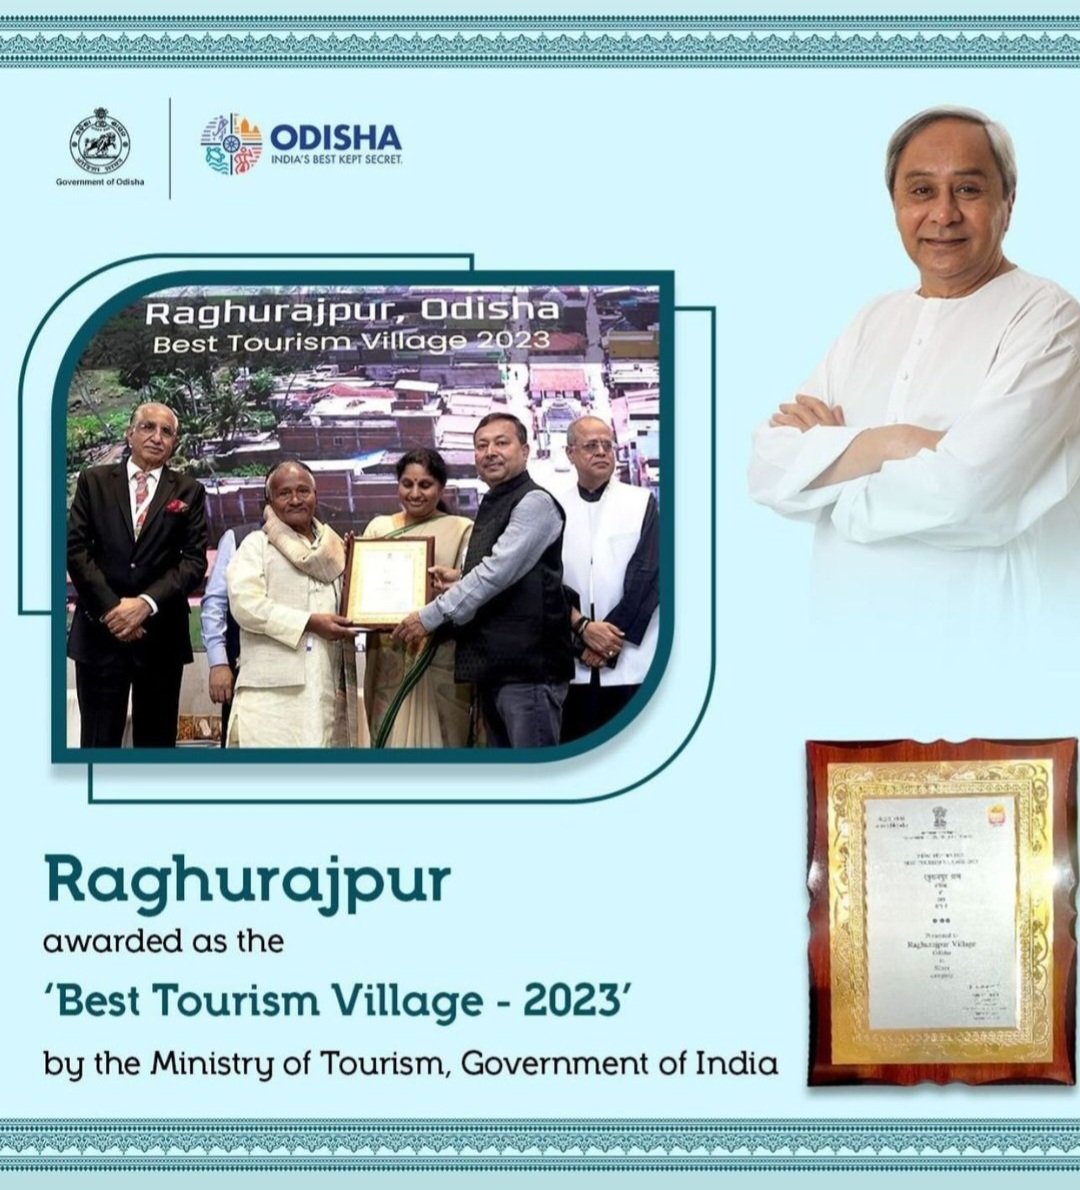 Raghurajpur #Odisha, grab the best tourism village 2023.